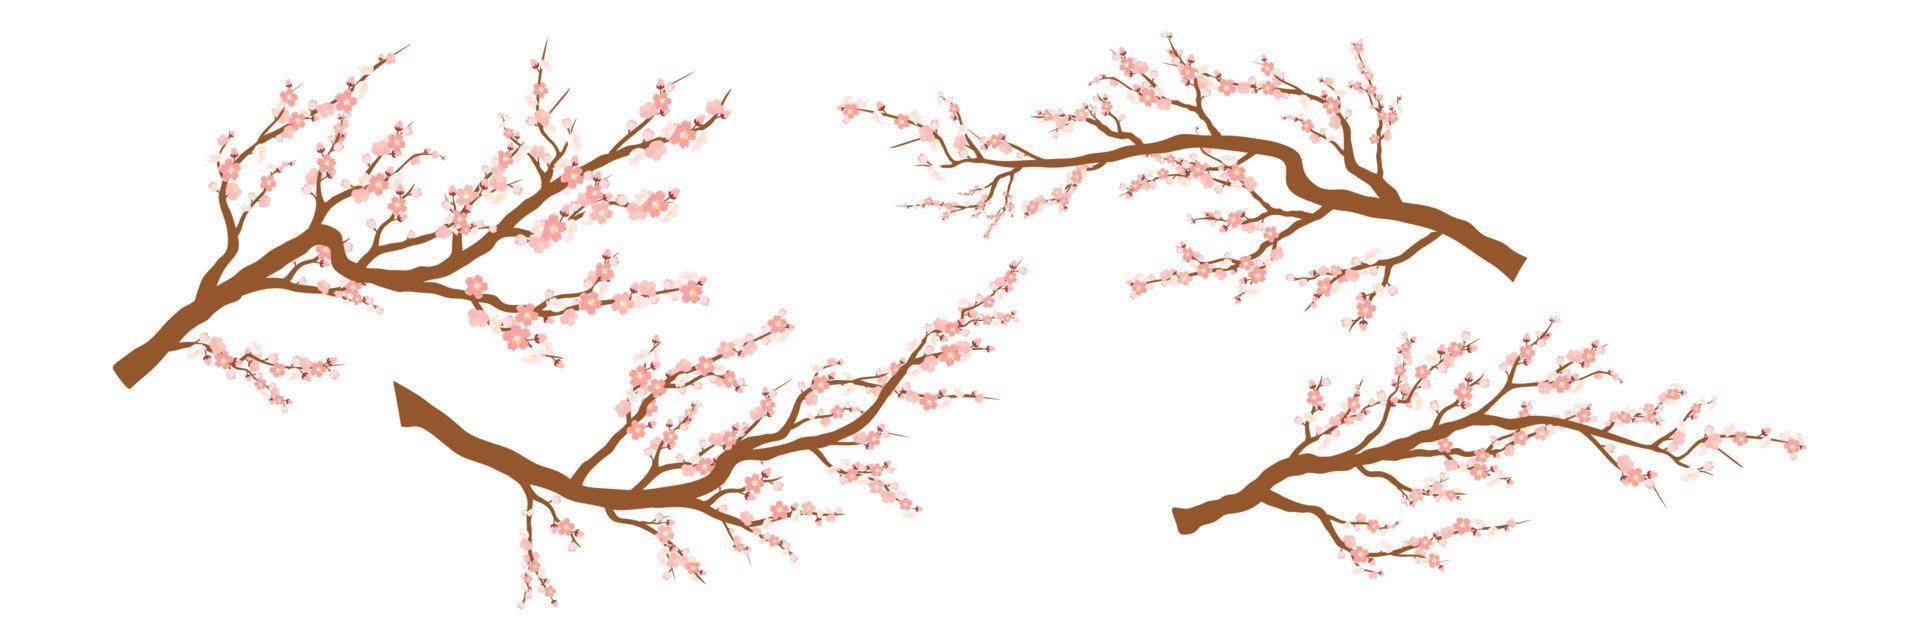 ensemble de branches d'arbres en fleurs de printemps, branche d'arbre à fleurs roses. sakura ou cerise vecteur